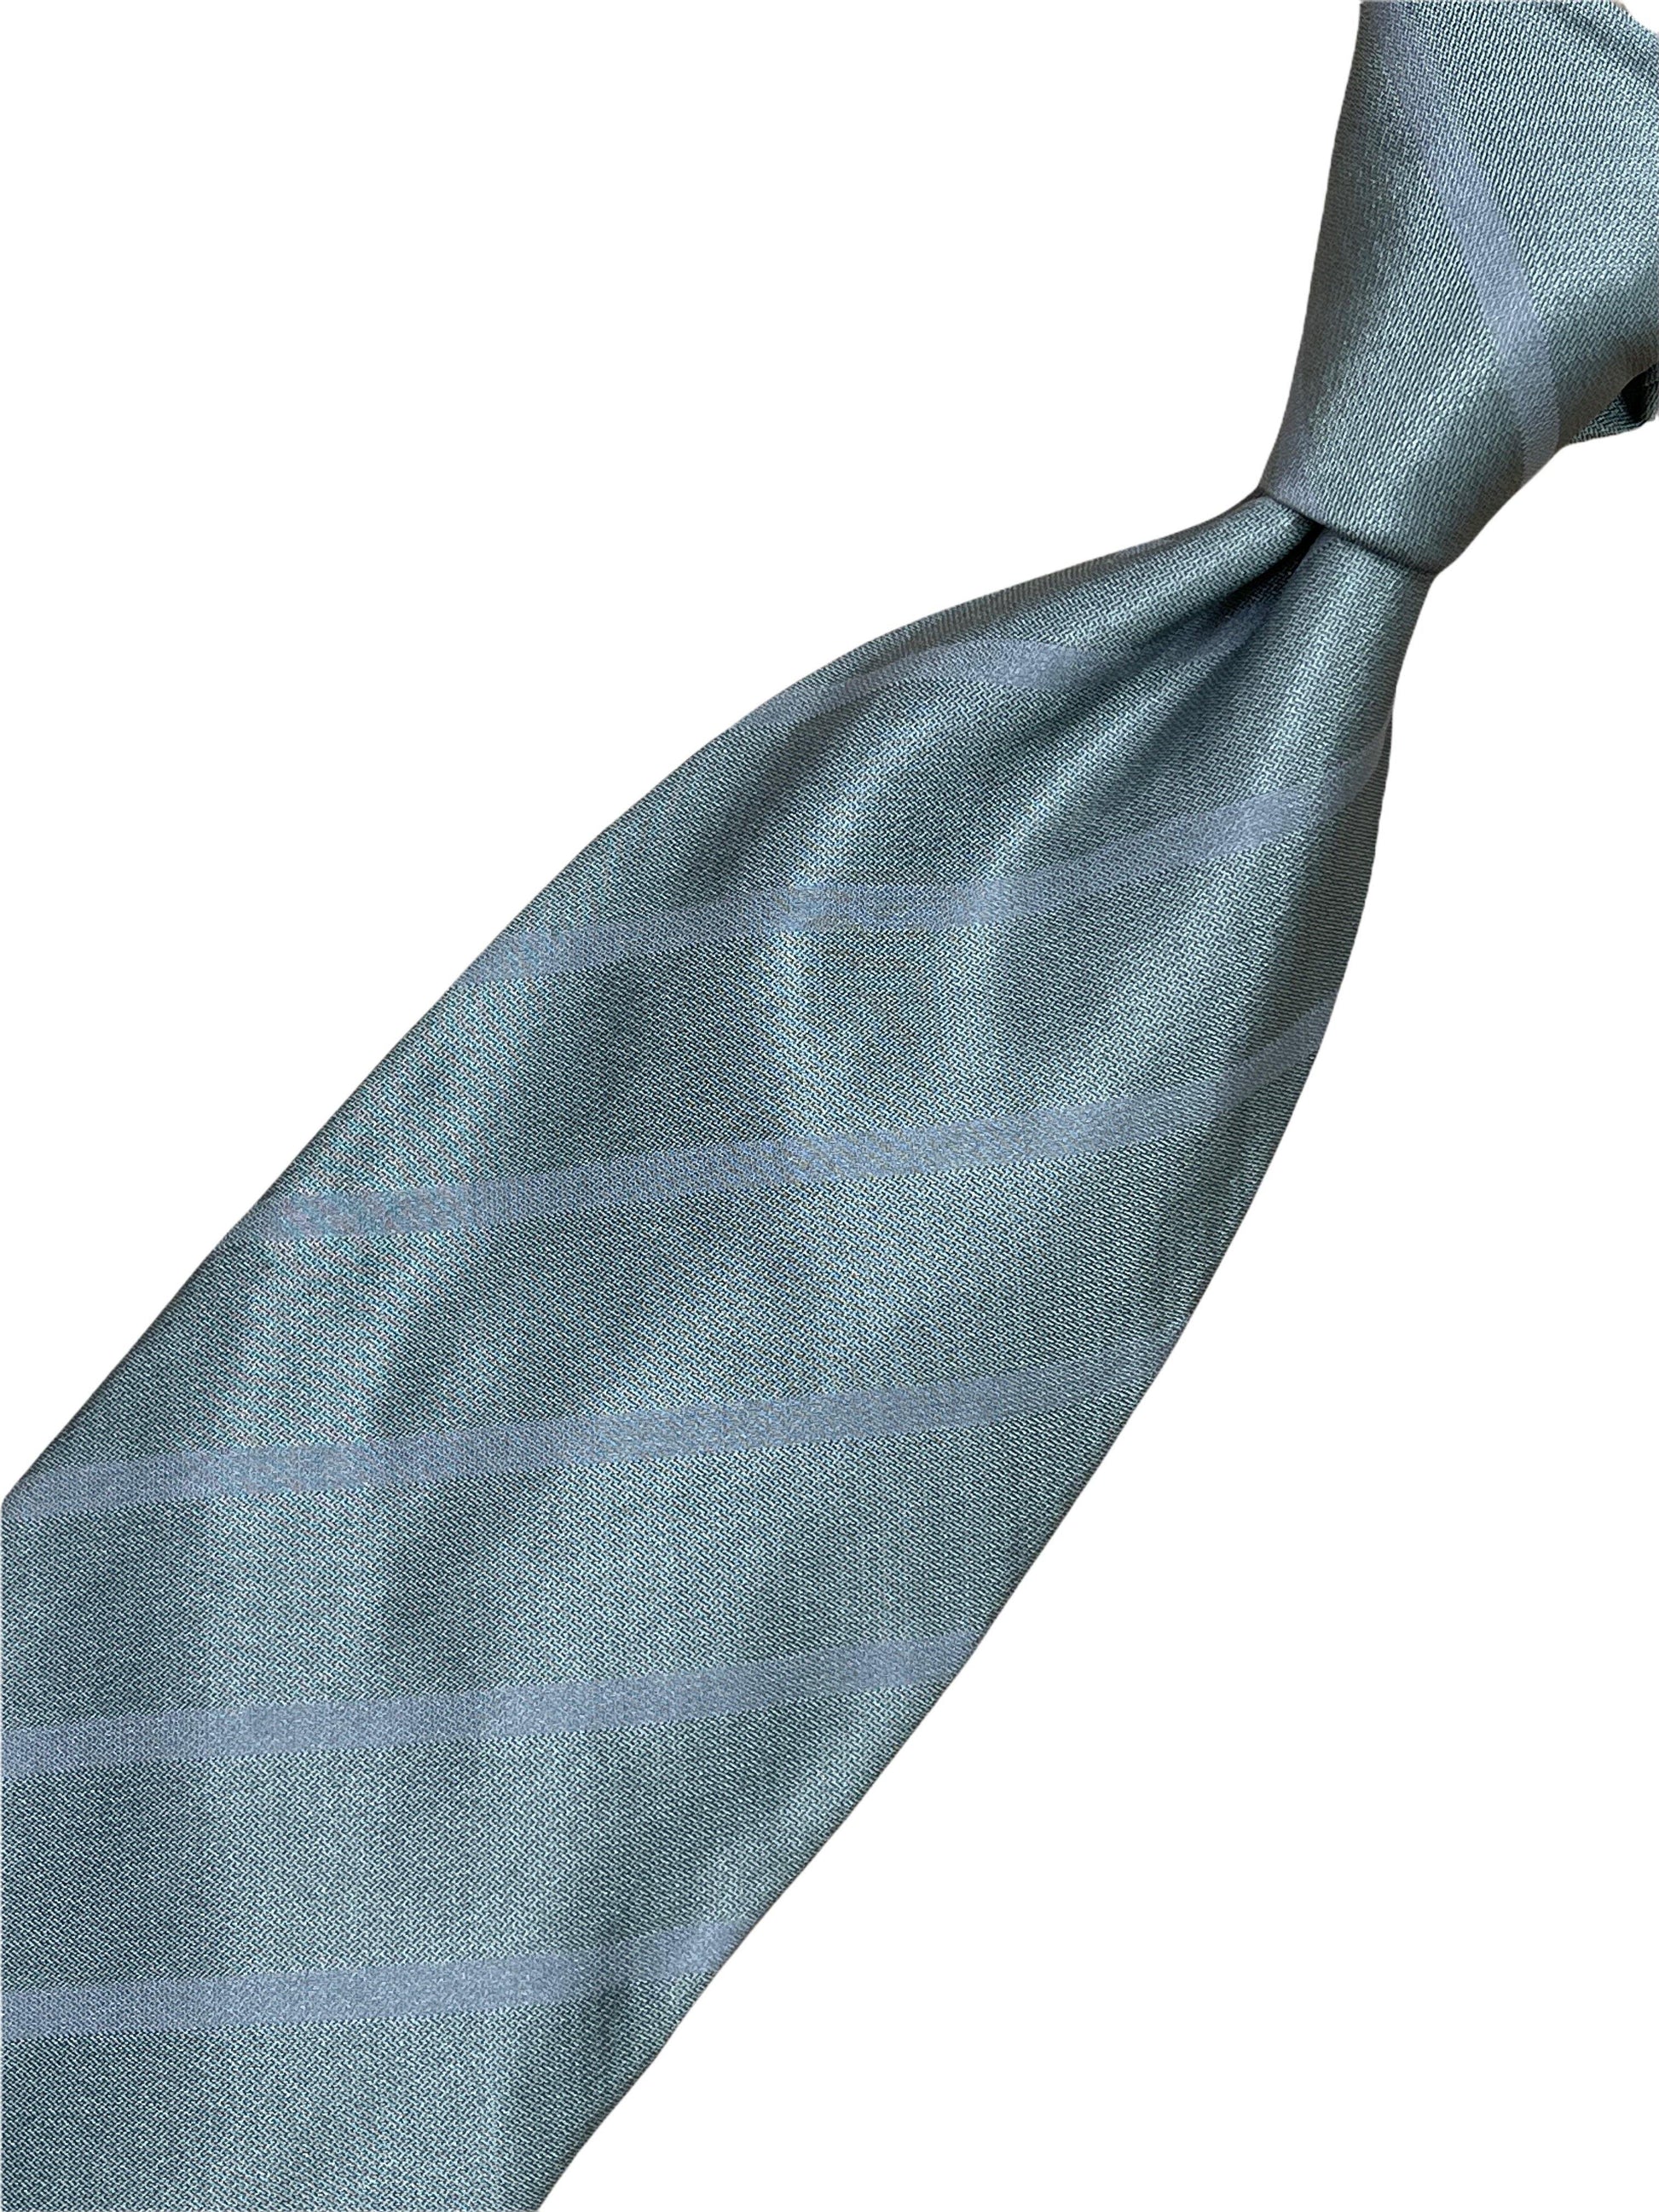 Giorgio Armani silver striped silk tie